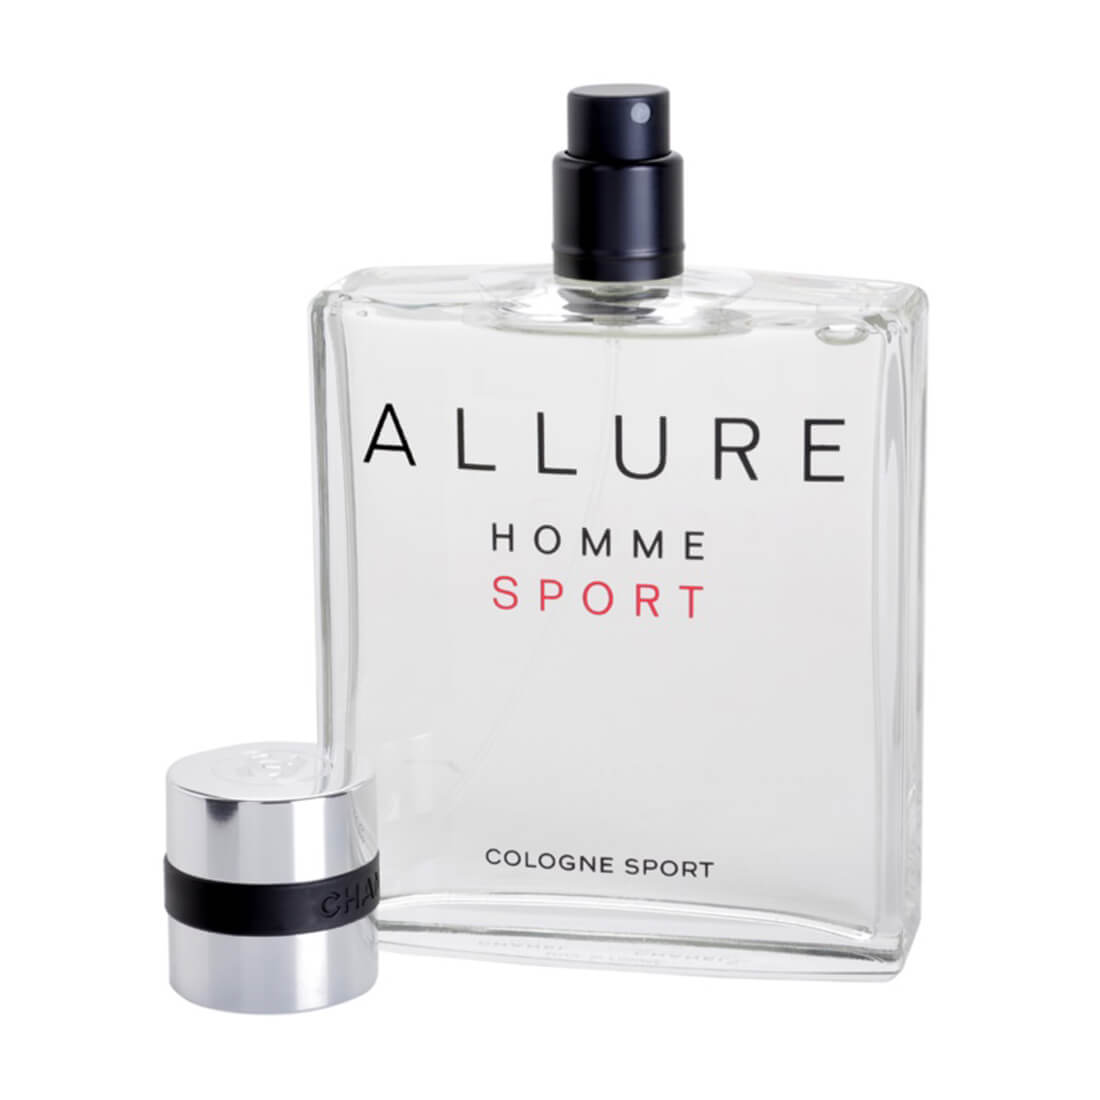 Chanel Allure Homme Sport Cologne Eau De Cologne Perfume For Men - 100ml